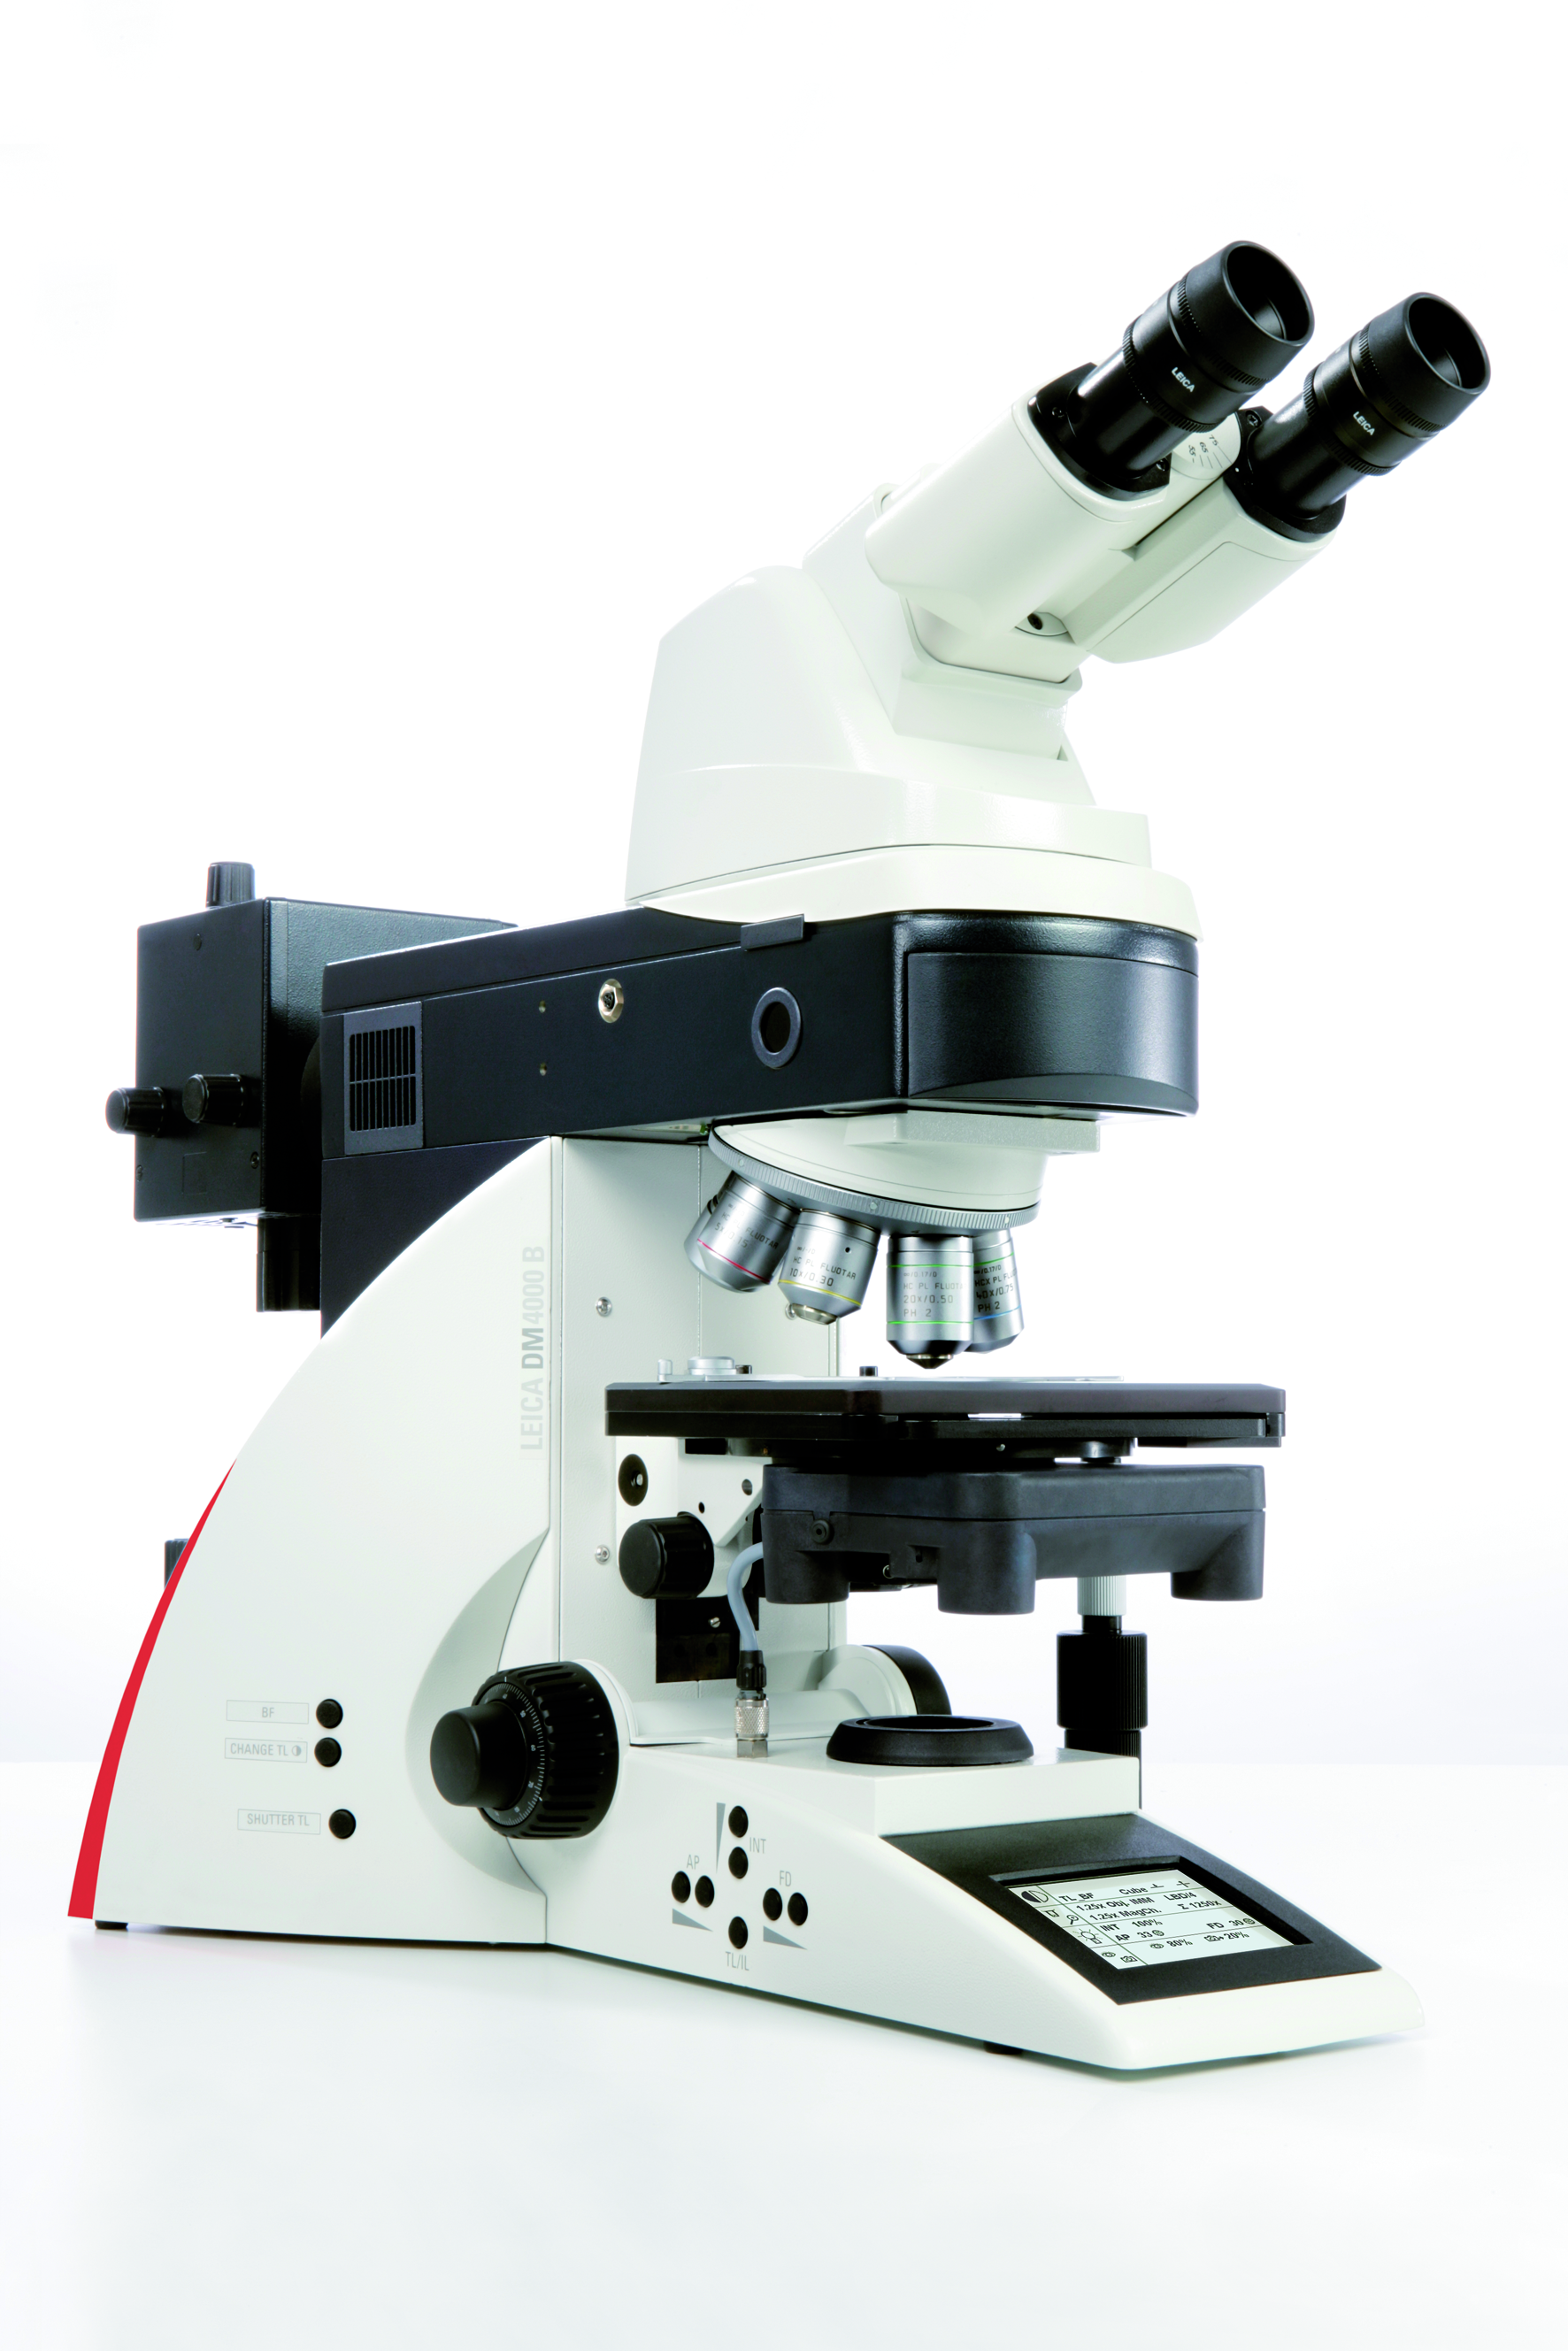 Il microscopio Leica DM4000 B dispone della funzione di automazione intelligente, per operazioni intuitive e riproducibilità di risultati.